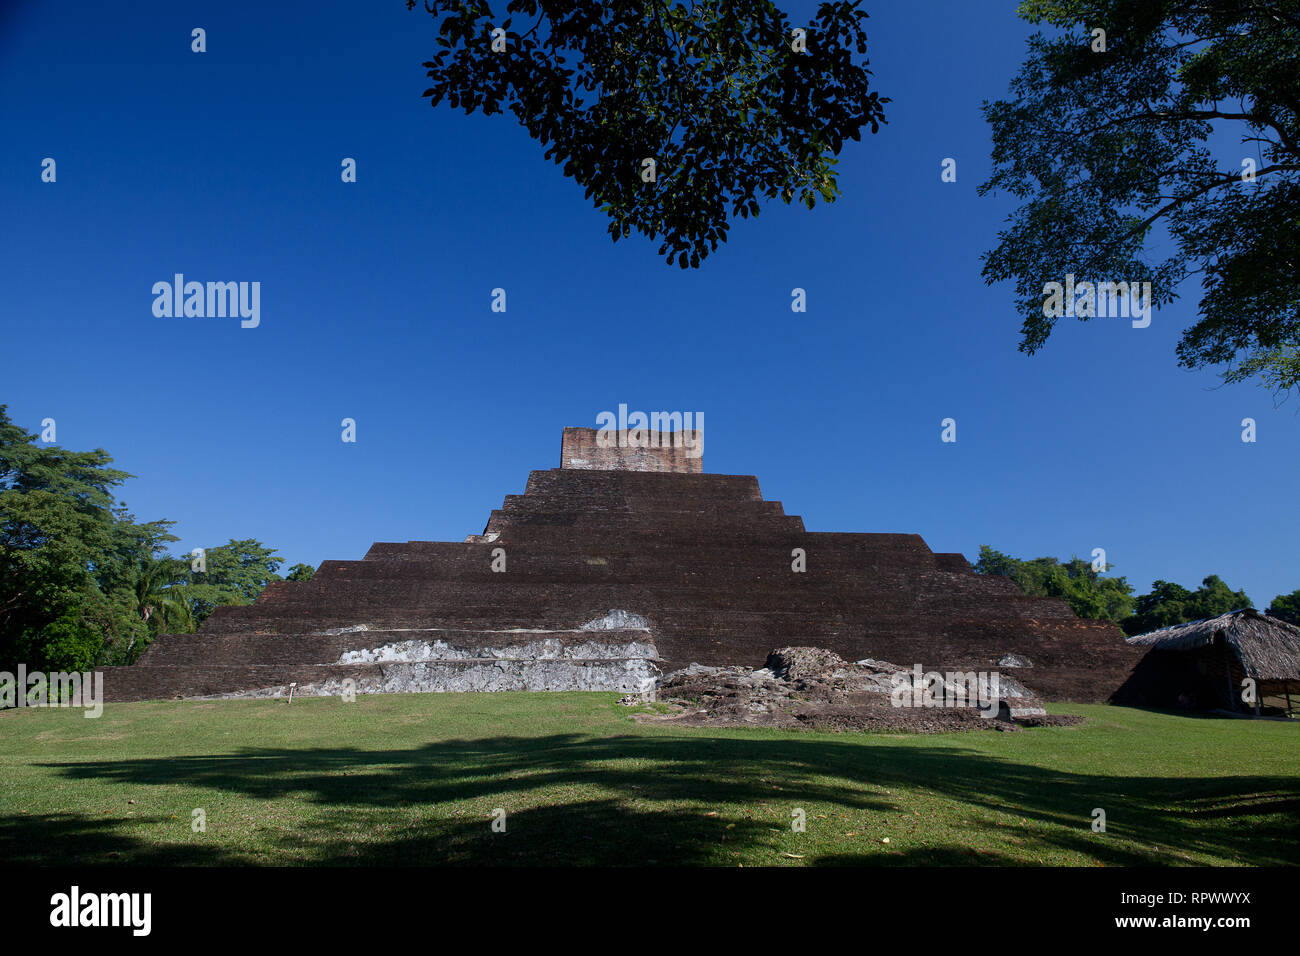 Comalcalco (archaeological site), Tabasco, Mexico. Comalcalco is an ancient Mayan archaeological site. Mexican pyramid. Stock Photo